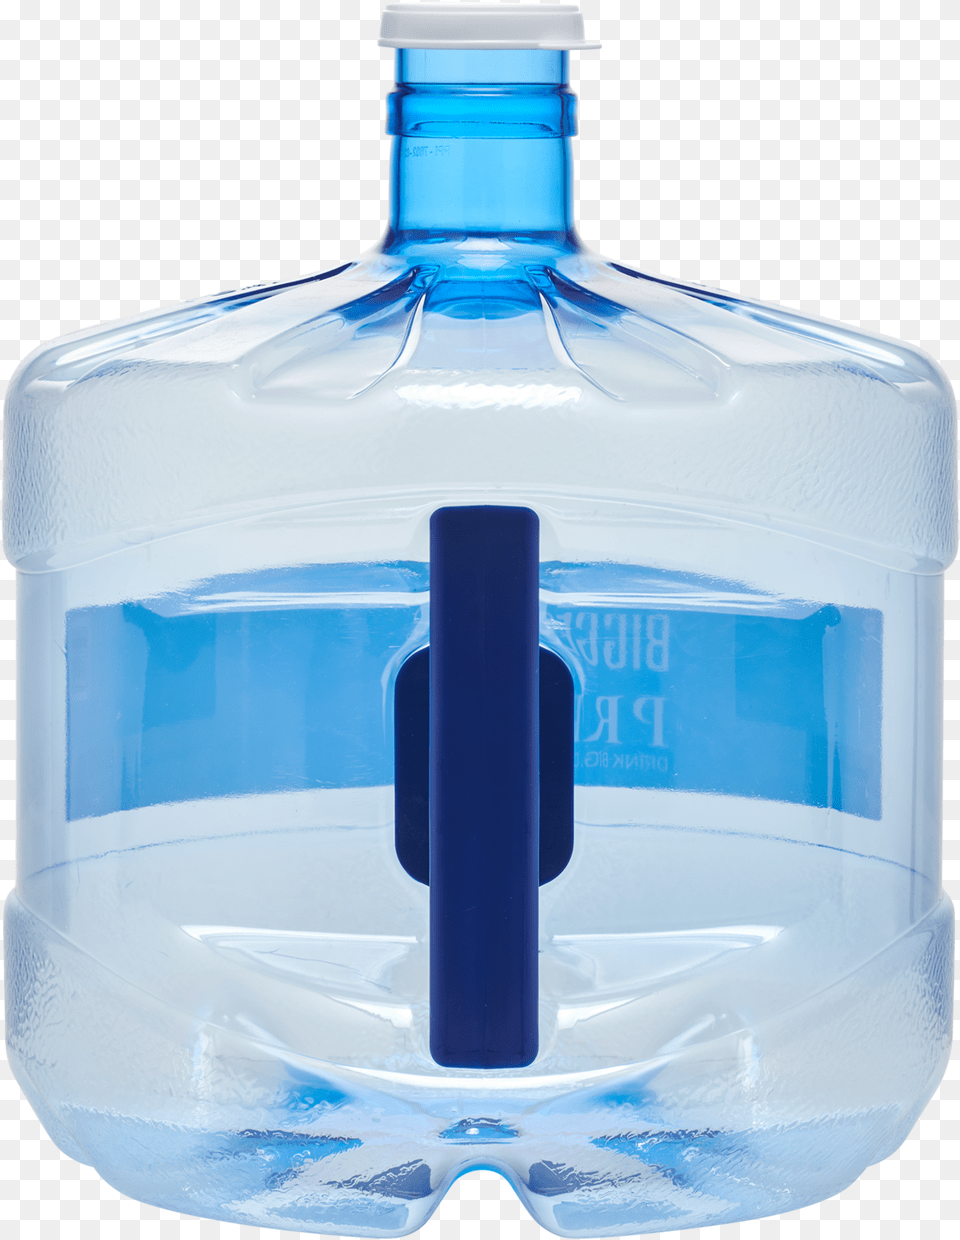 Water Jug Water Bottle, Water Jug, Water Bottle Png Image